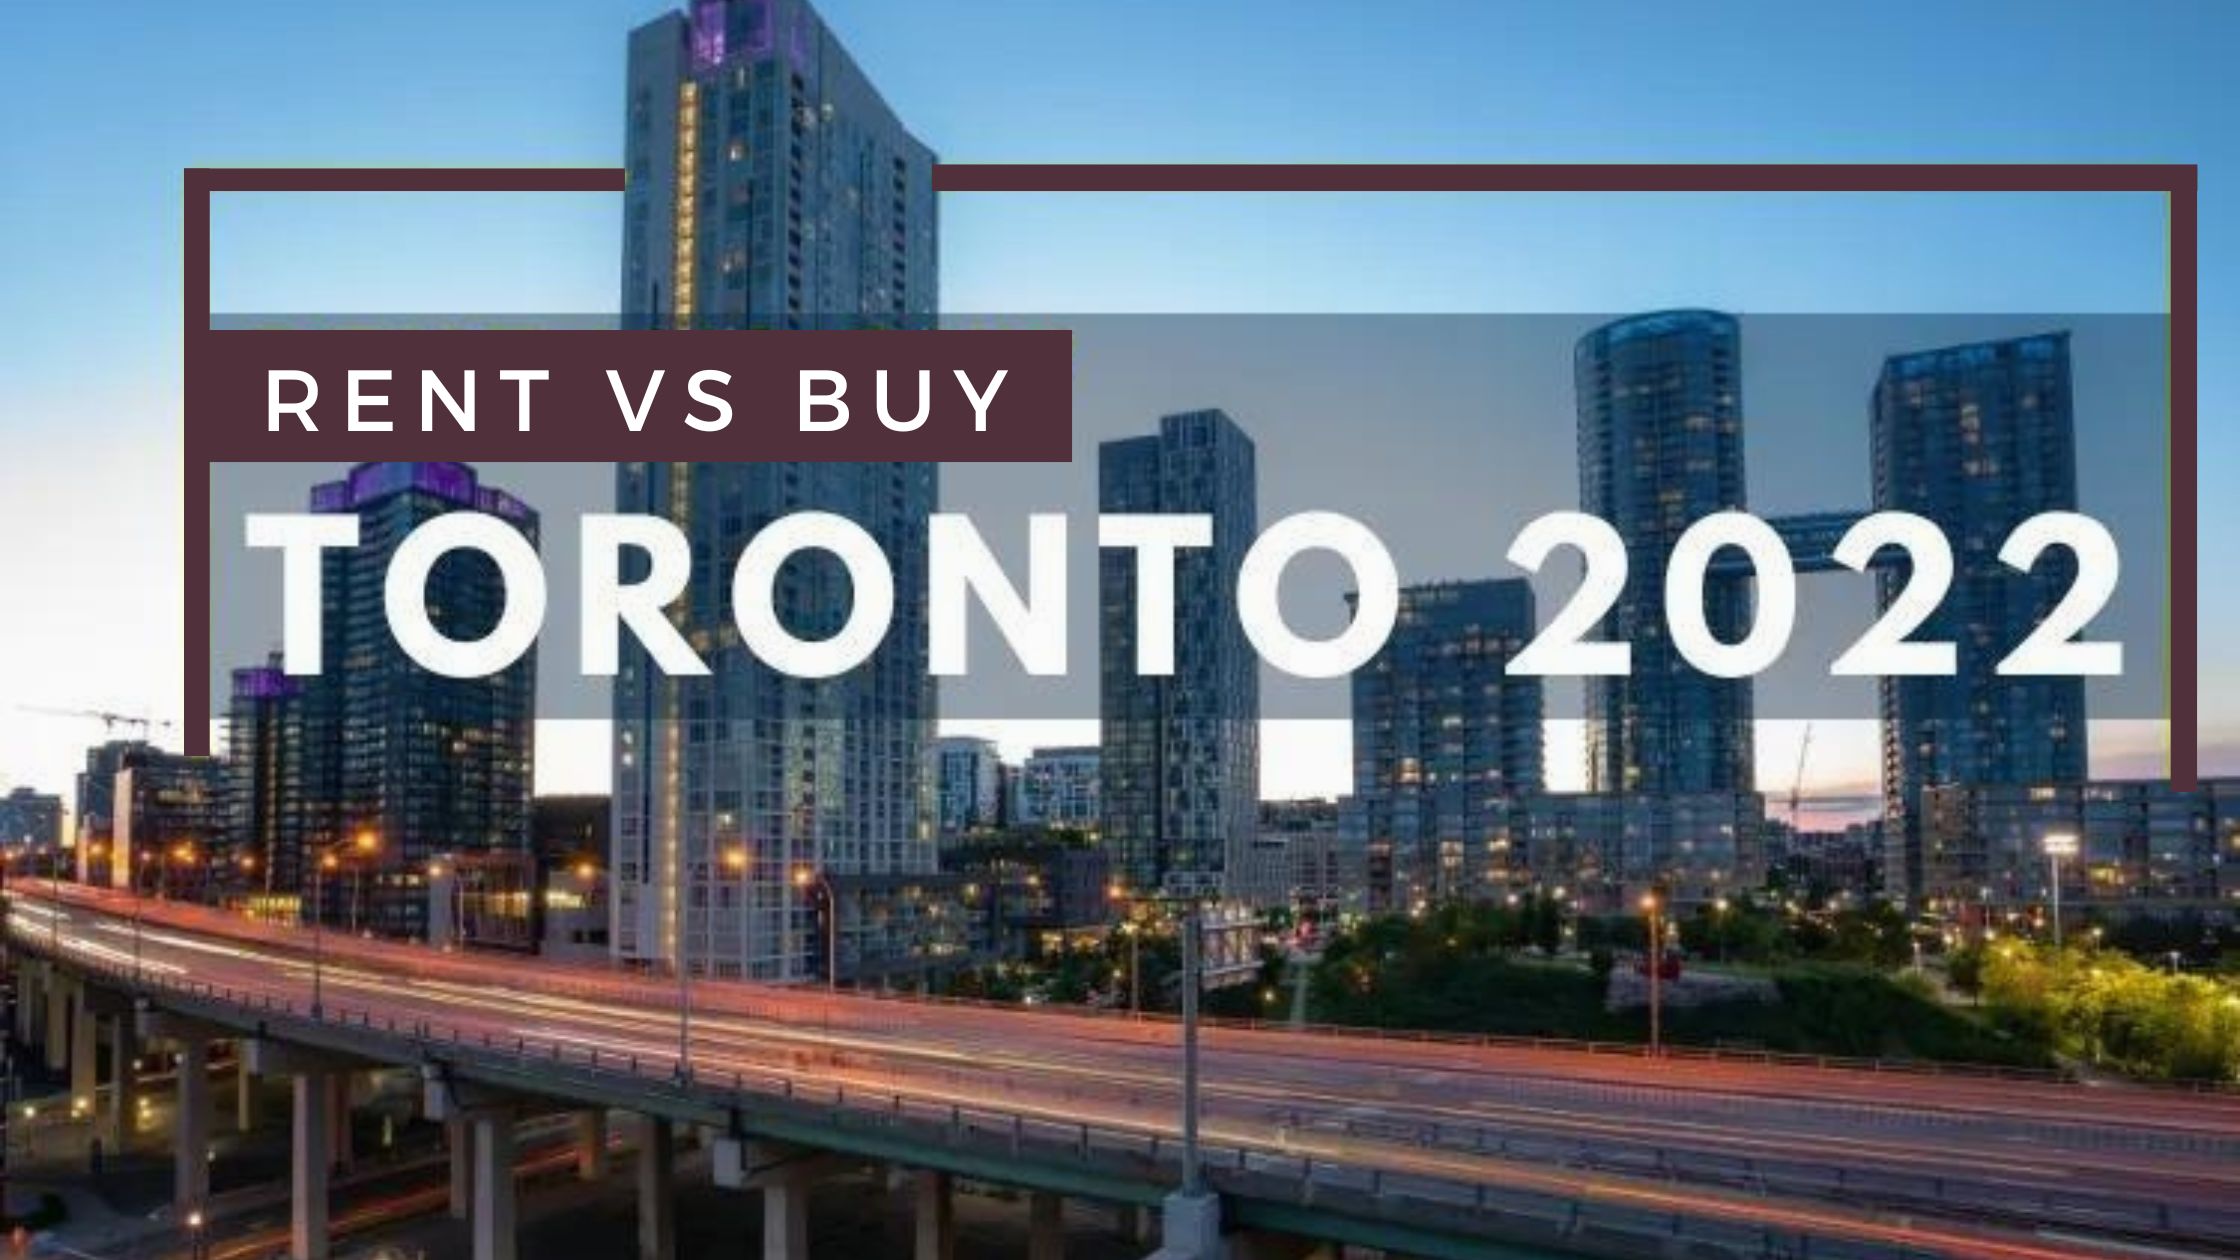 Renting vs buying Toronto 2022